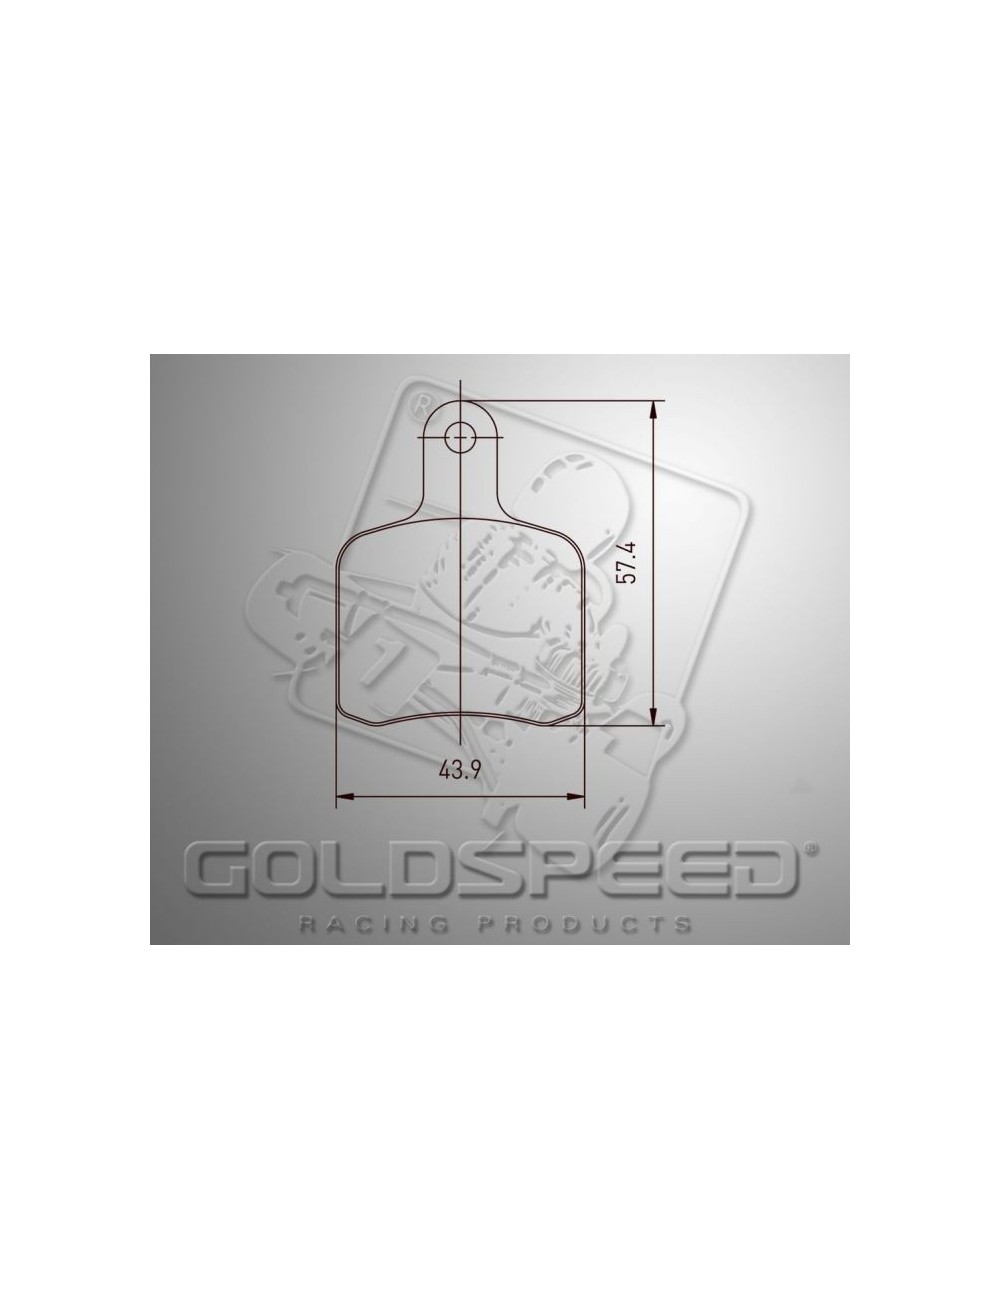 Pastiglie Goldspeed per OTK BS5 - SA2